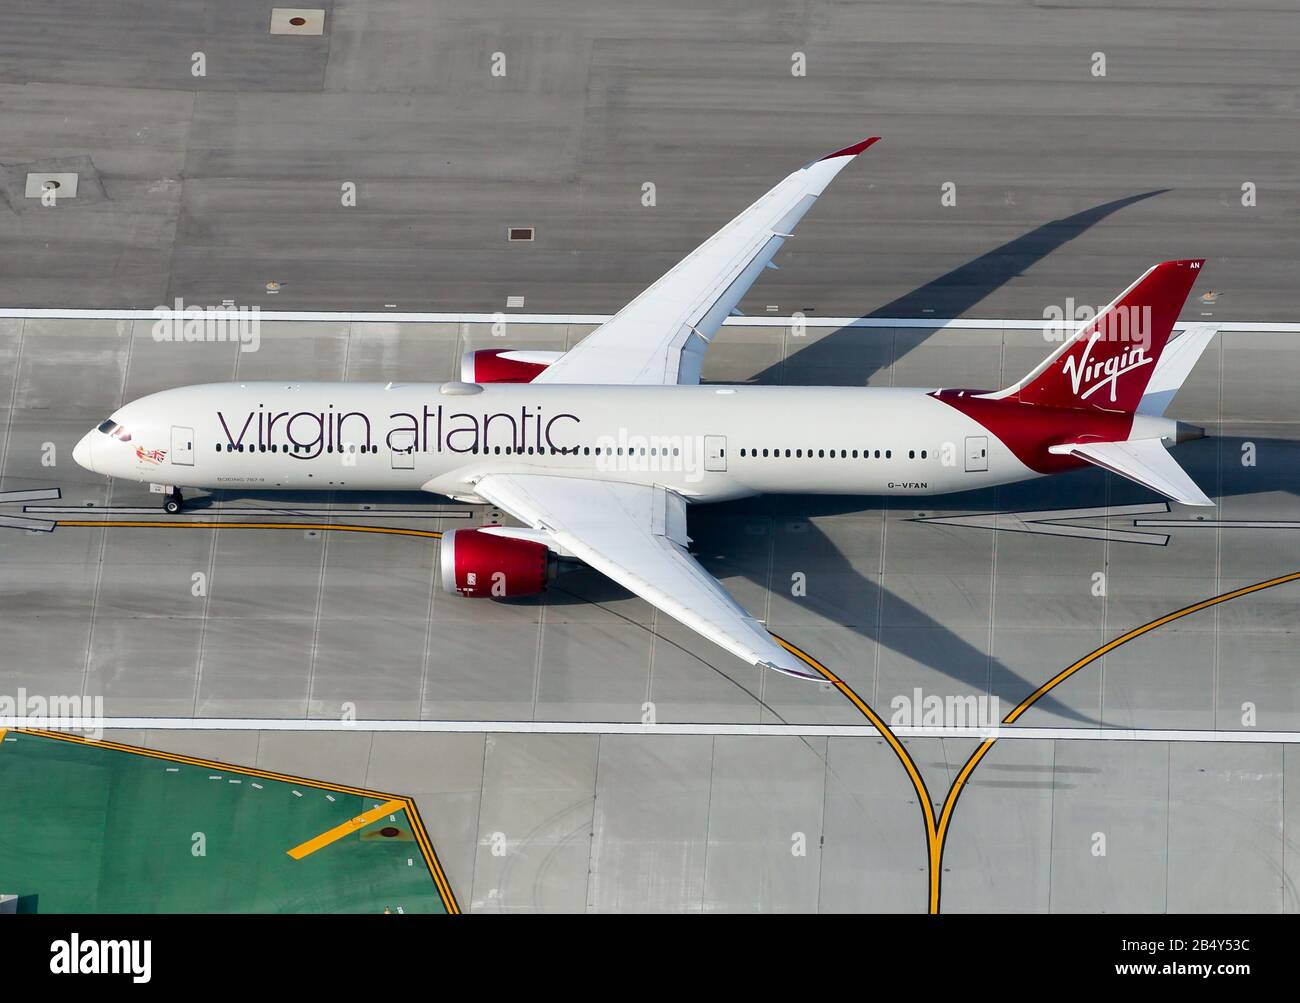 Vue aérienne du Boeing 787 Dreamliner de Virgin Atlantic, au départ de l'aéroport international de LAX. 787-9 aéronefs immatriculés comme G-VFAN. Banque D'Images